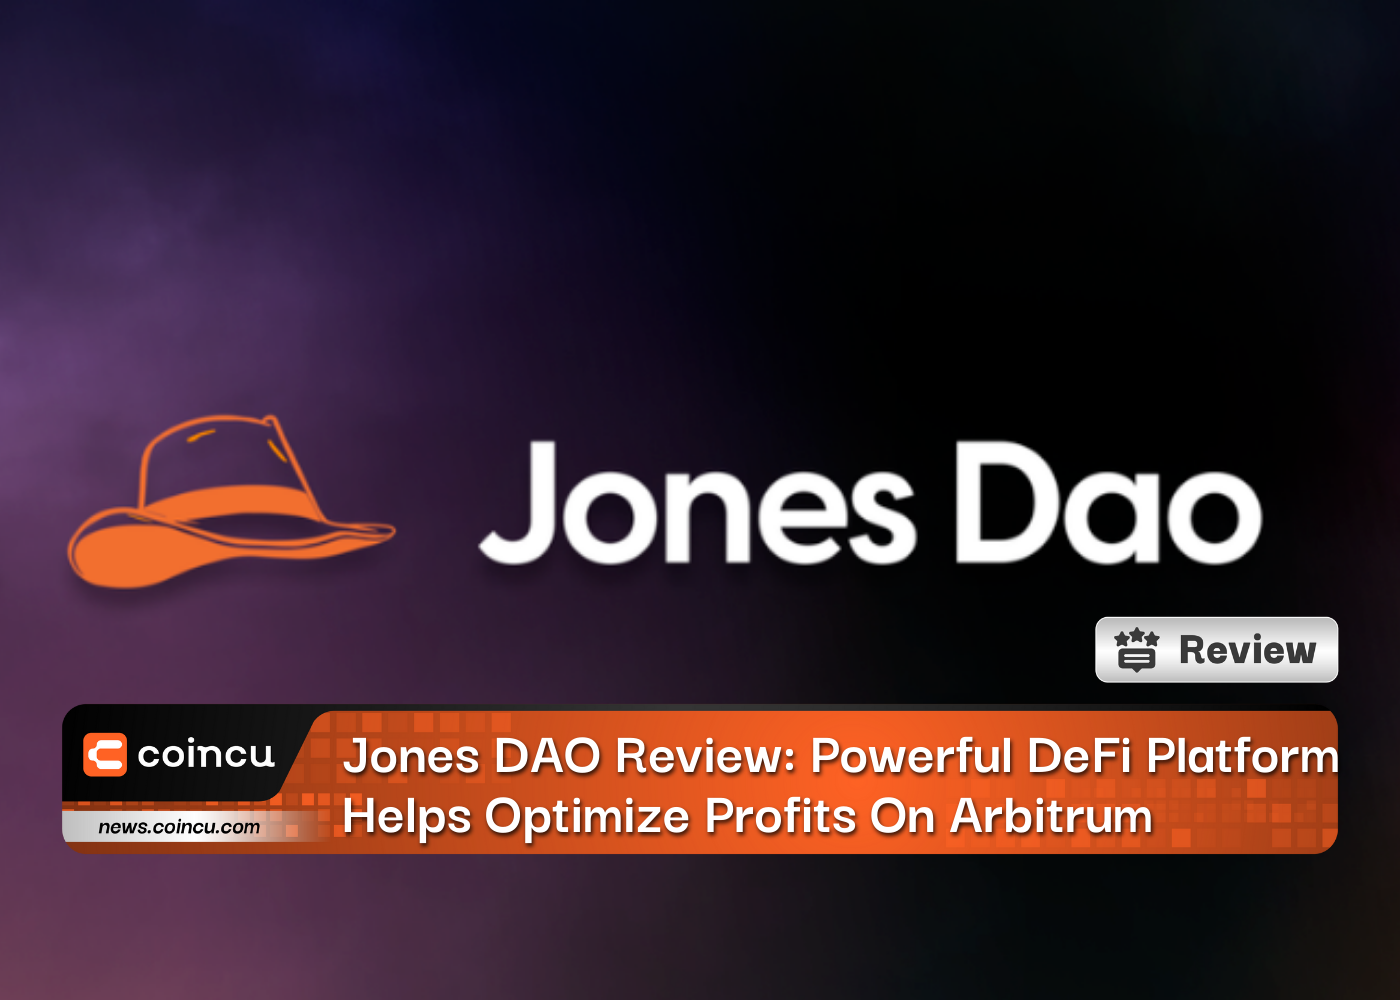 Jones DAO Review: Powerful DeFi Platform Helps Optimize Profits On Arbitrum